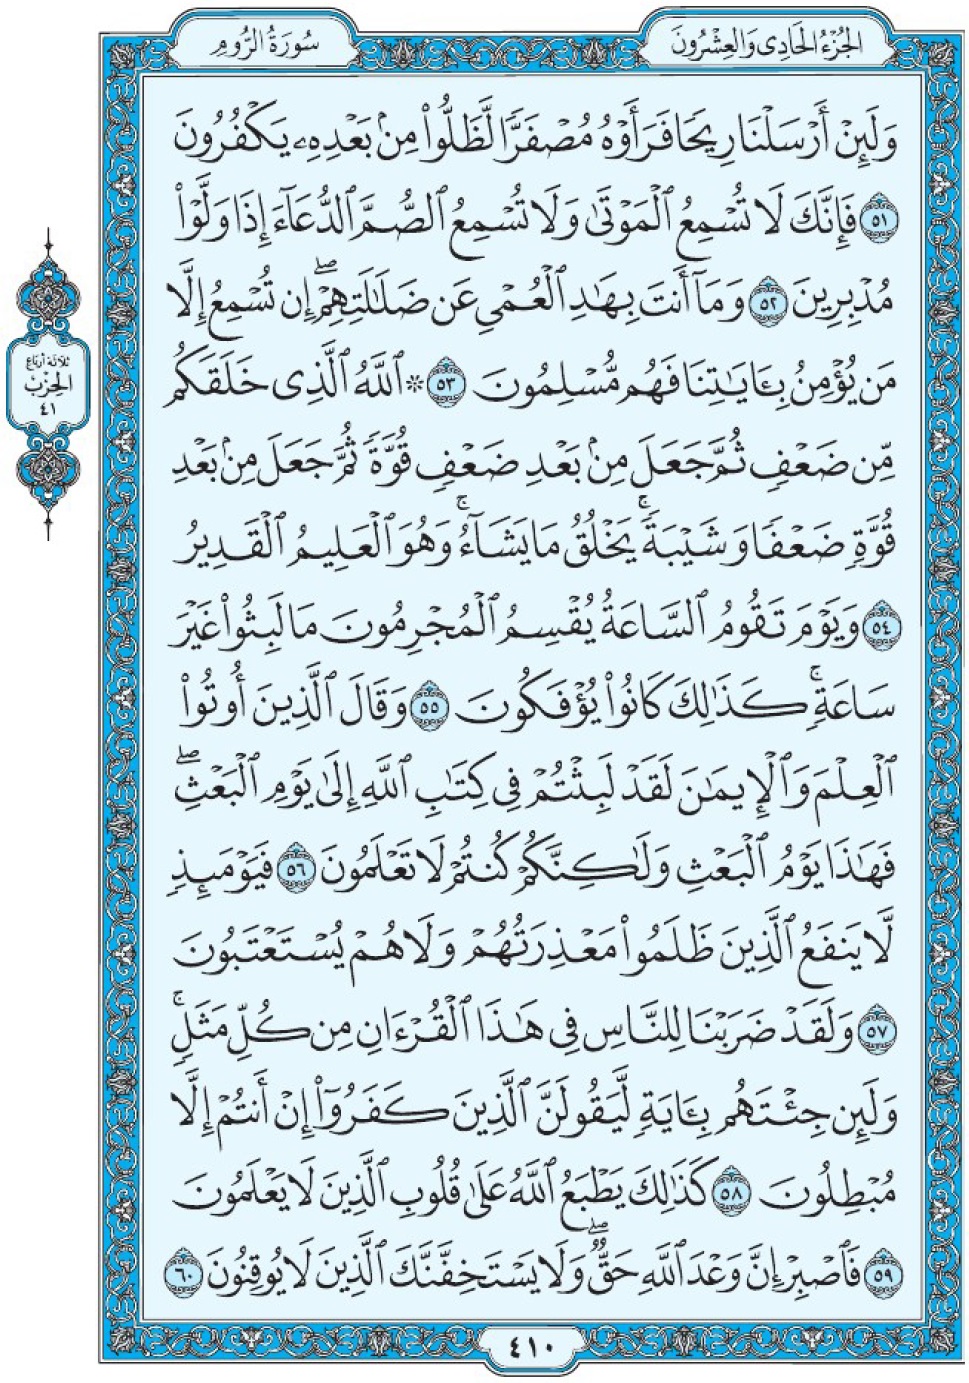 Коран Мединский мусхаф страница 410, Ар-Рум, аят 51-60